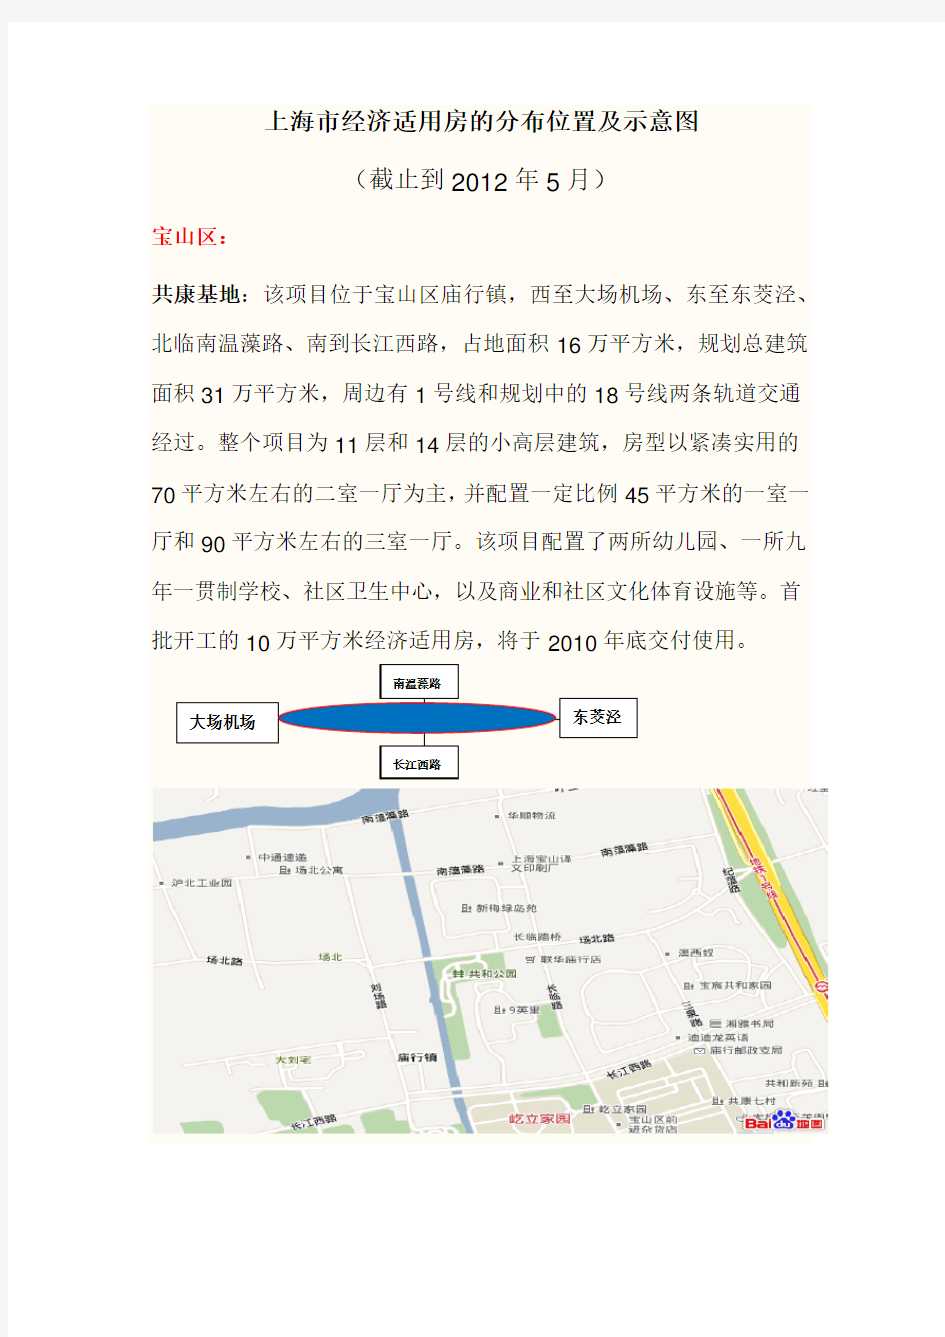 上海市经济适用房的分布位置及示意图